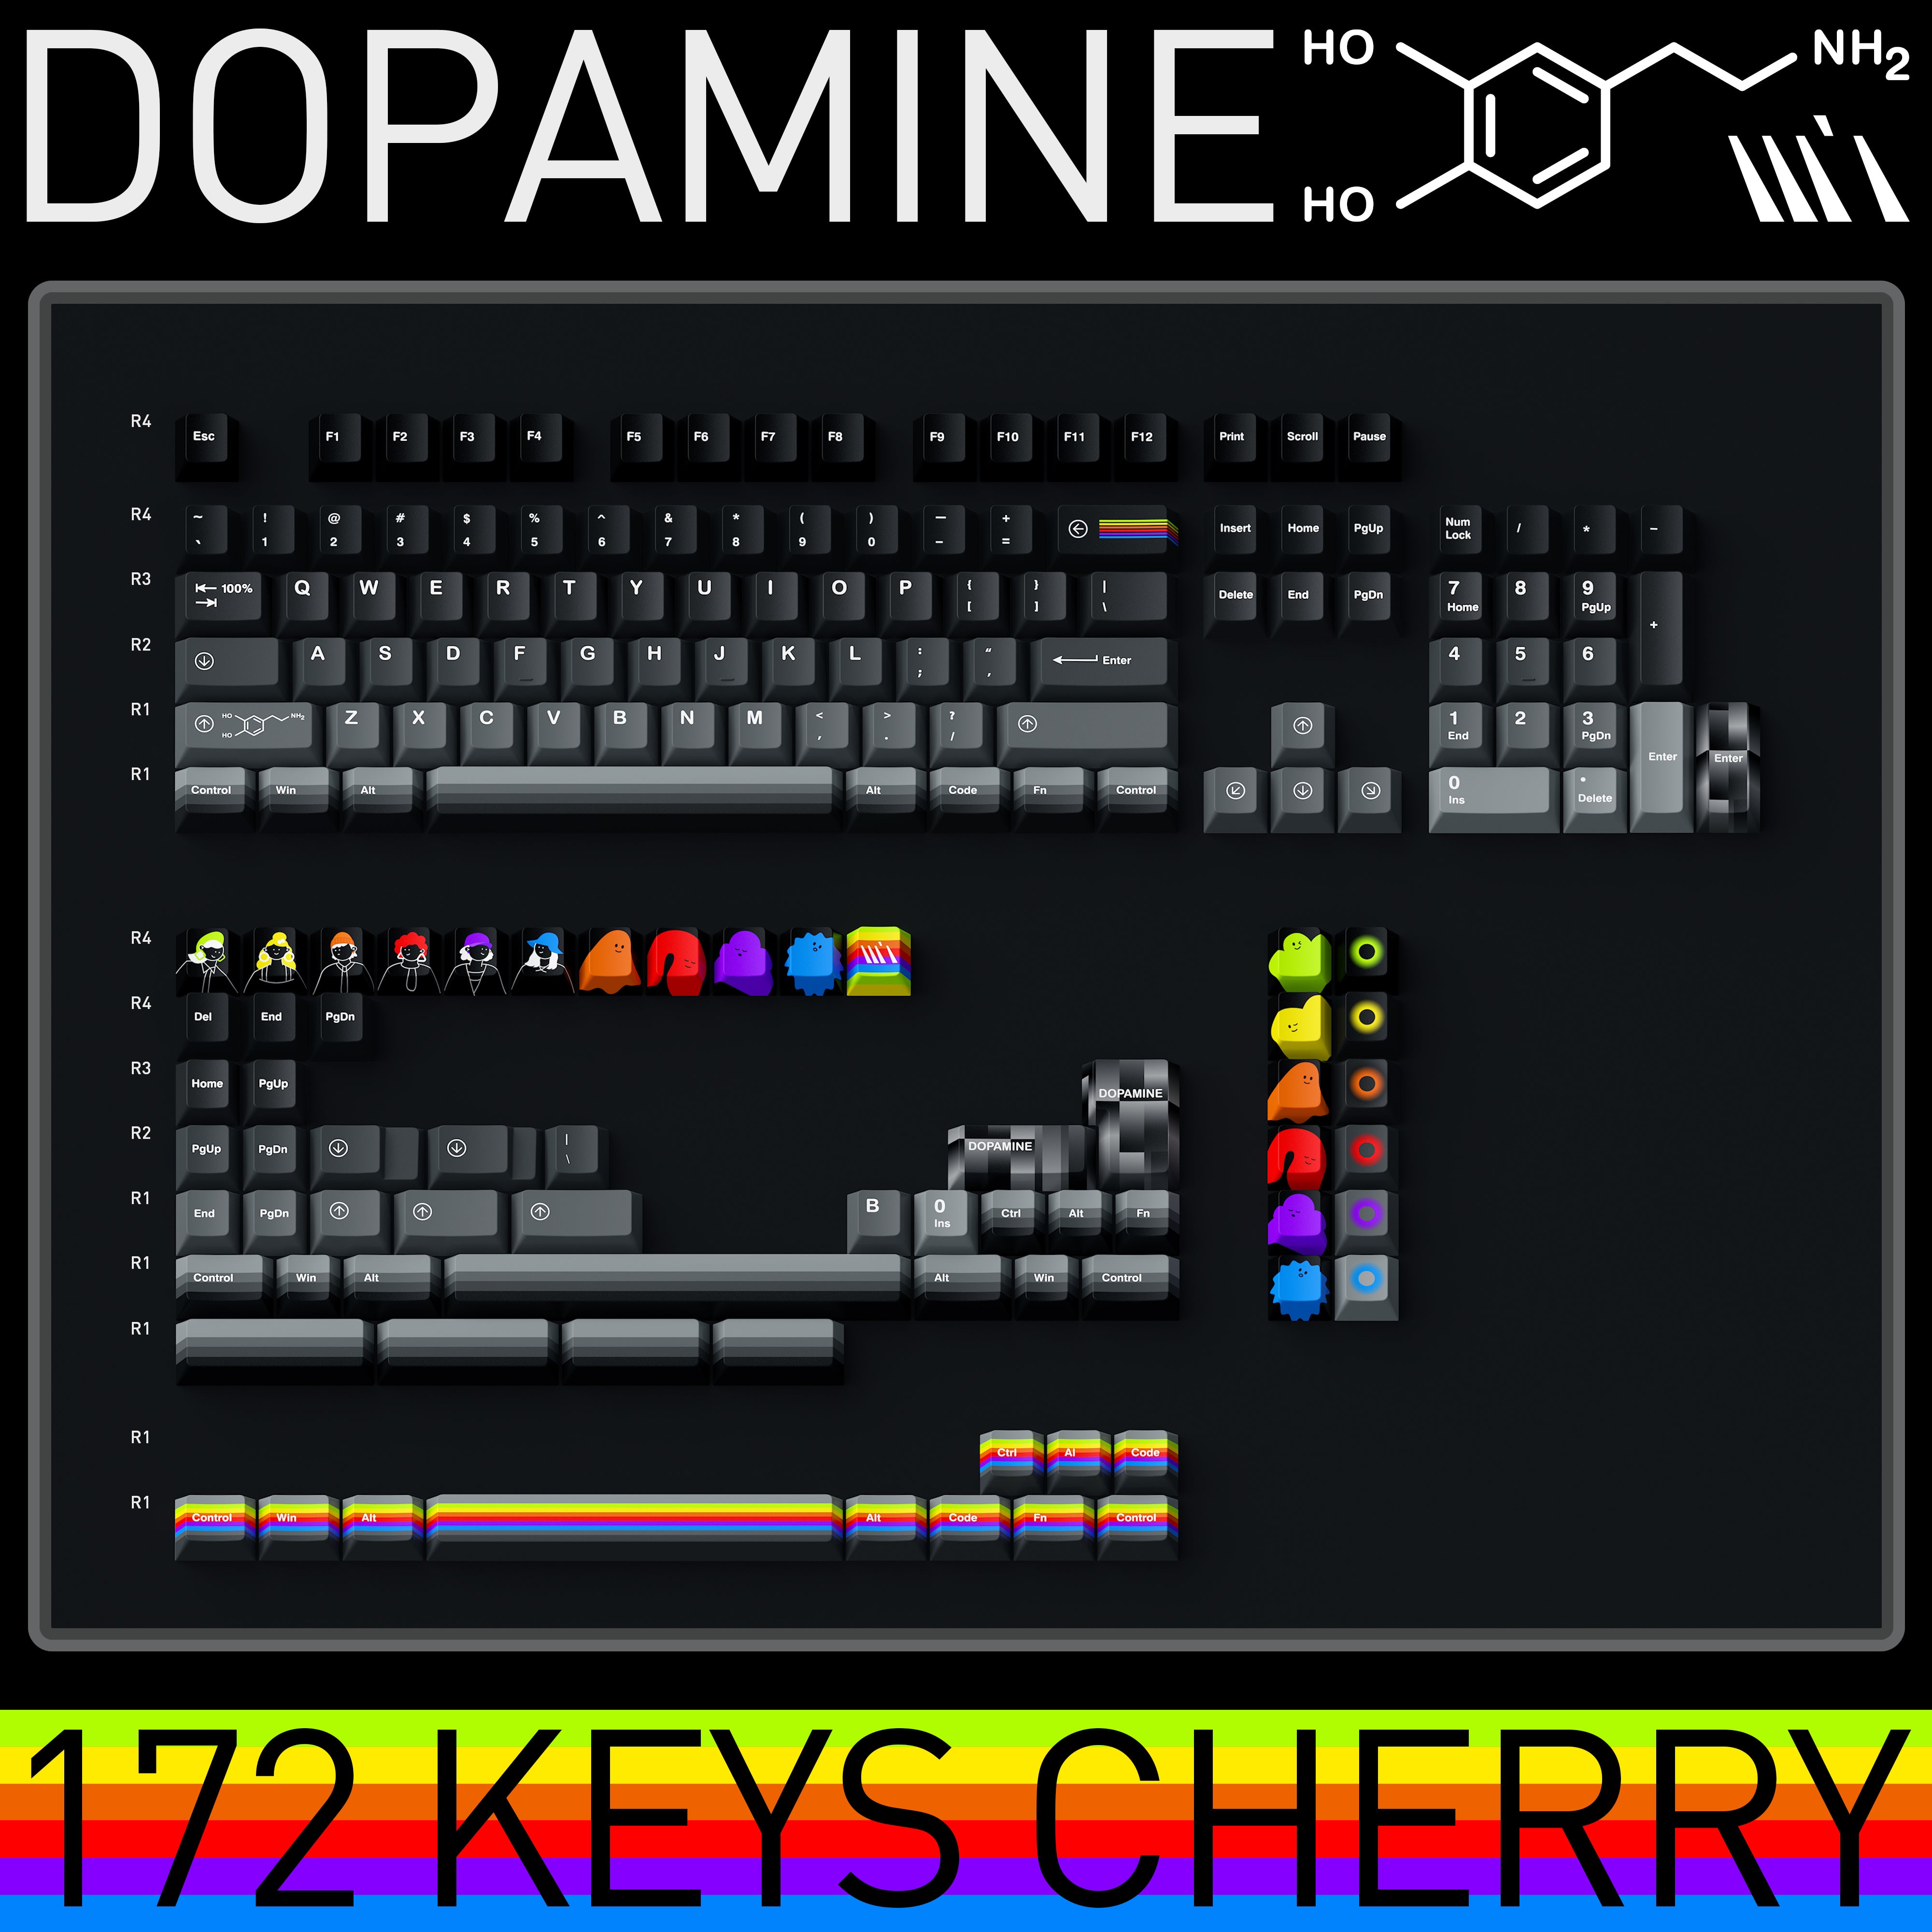 WUkds Dopamine Keycap